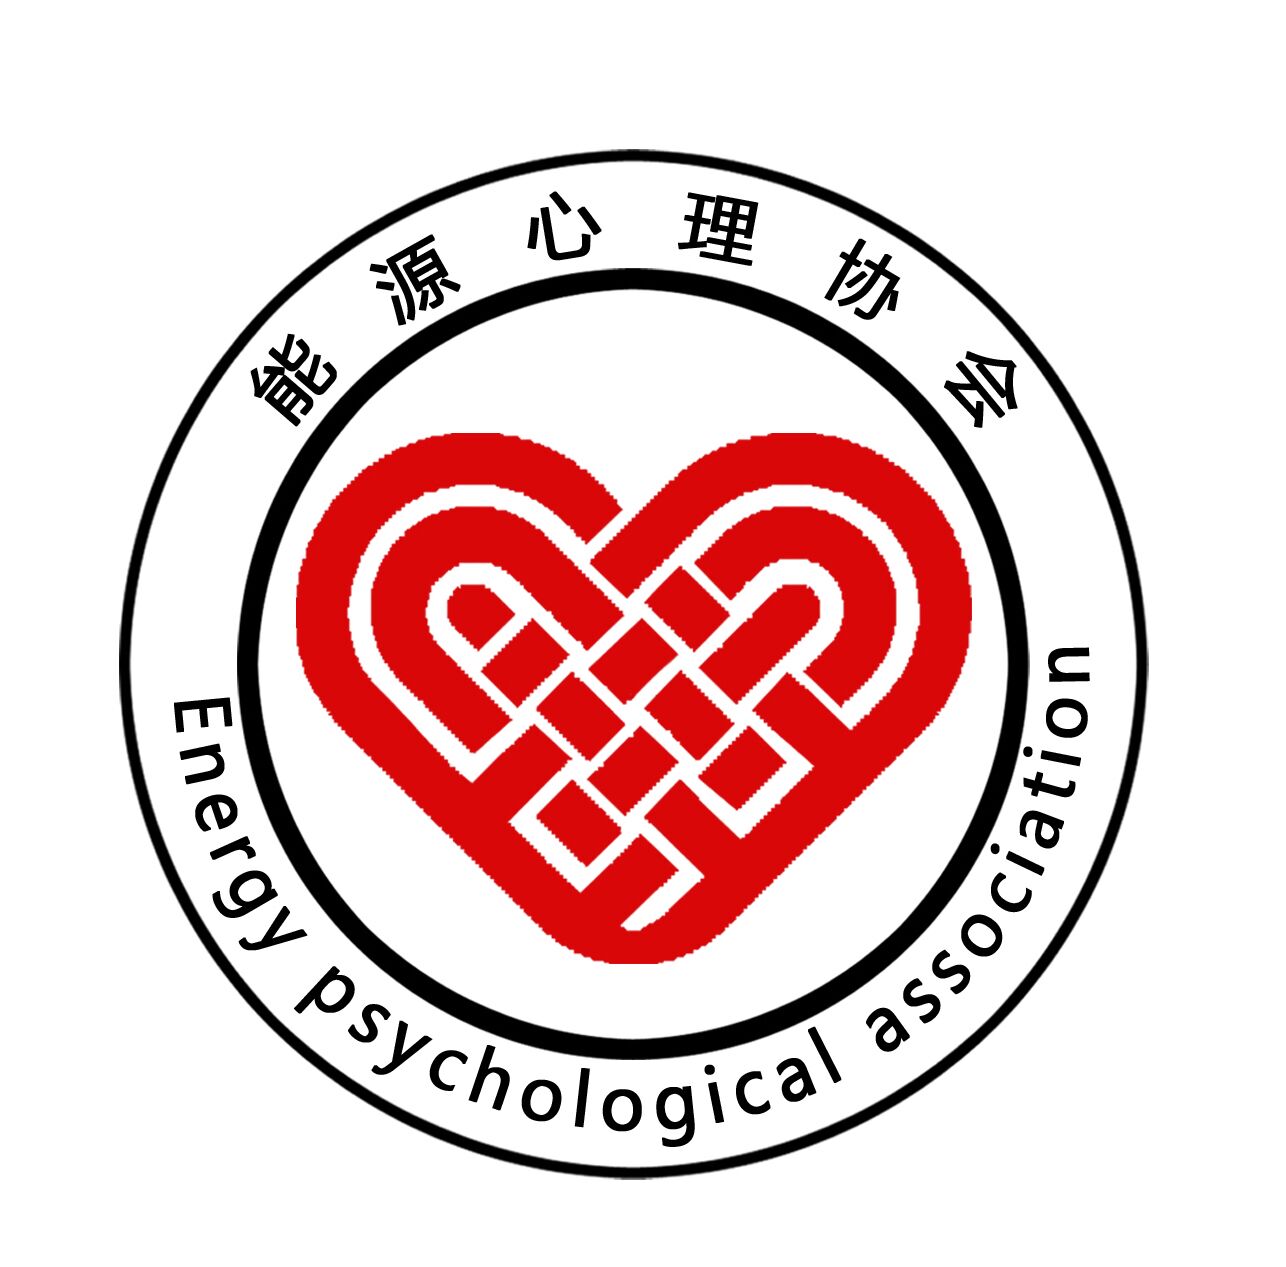 能源与环境工程学院心理协会会徽